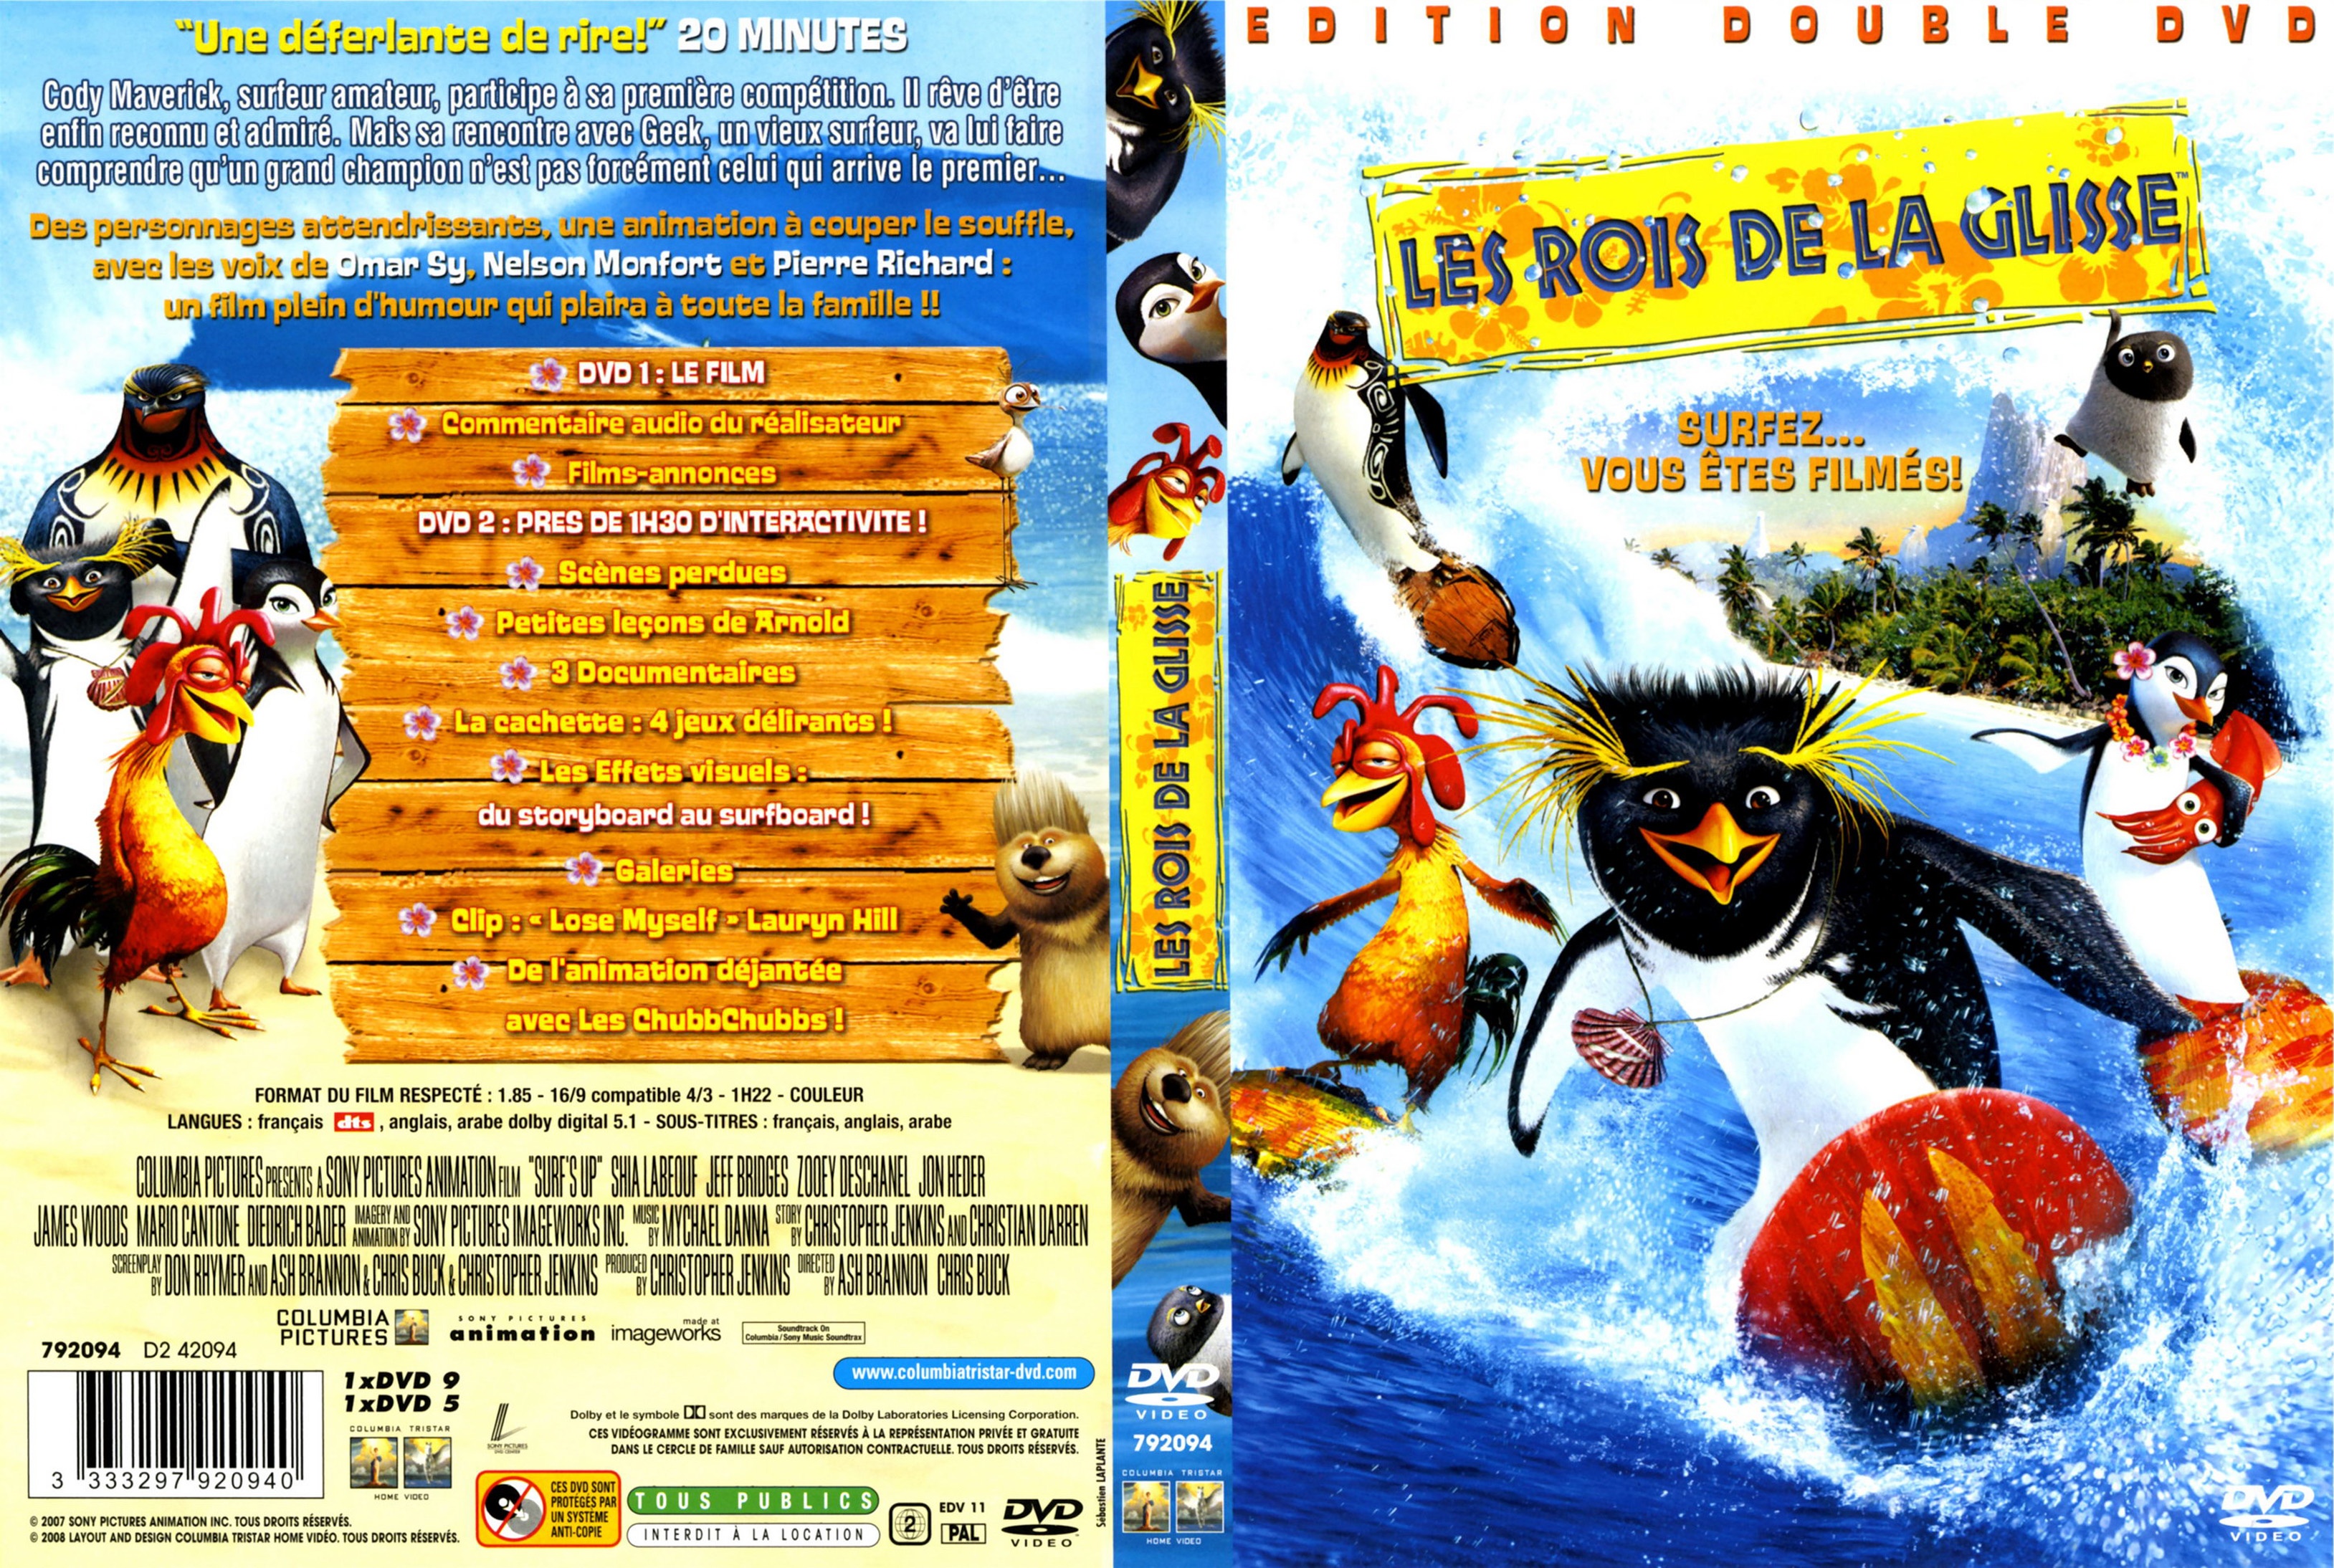 Jaquette DVD Les rois de la glisse v2